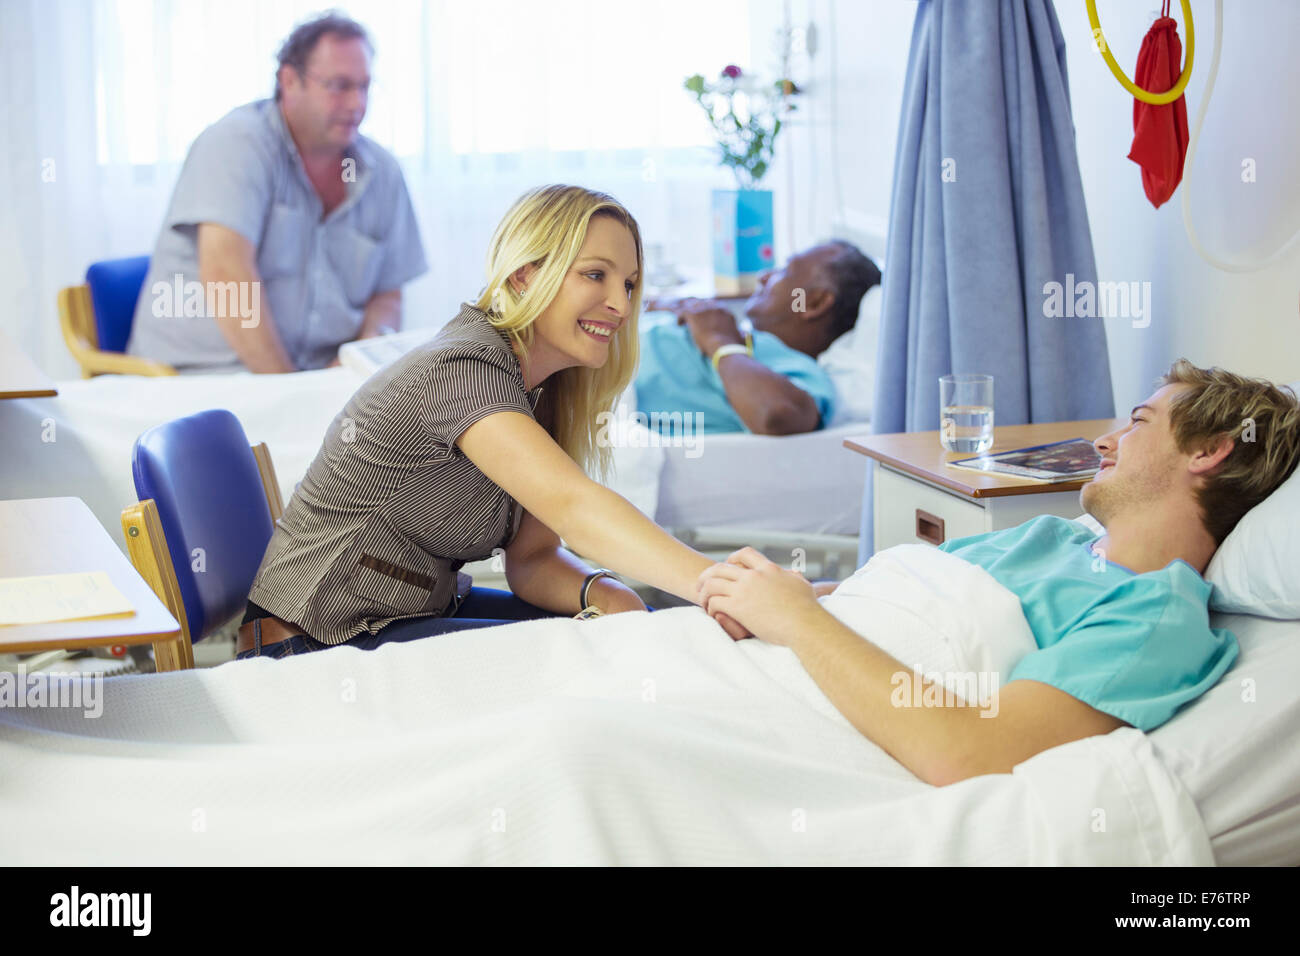 Woman talking to boyfriend in hospital Stock Photo